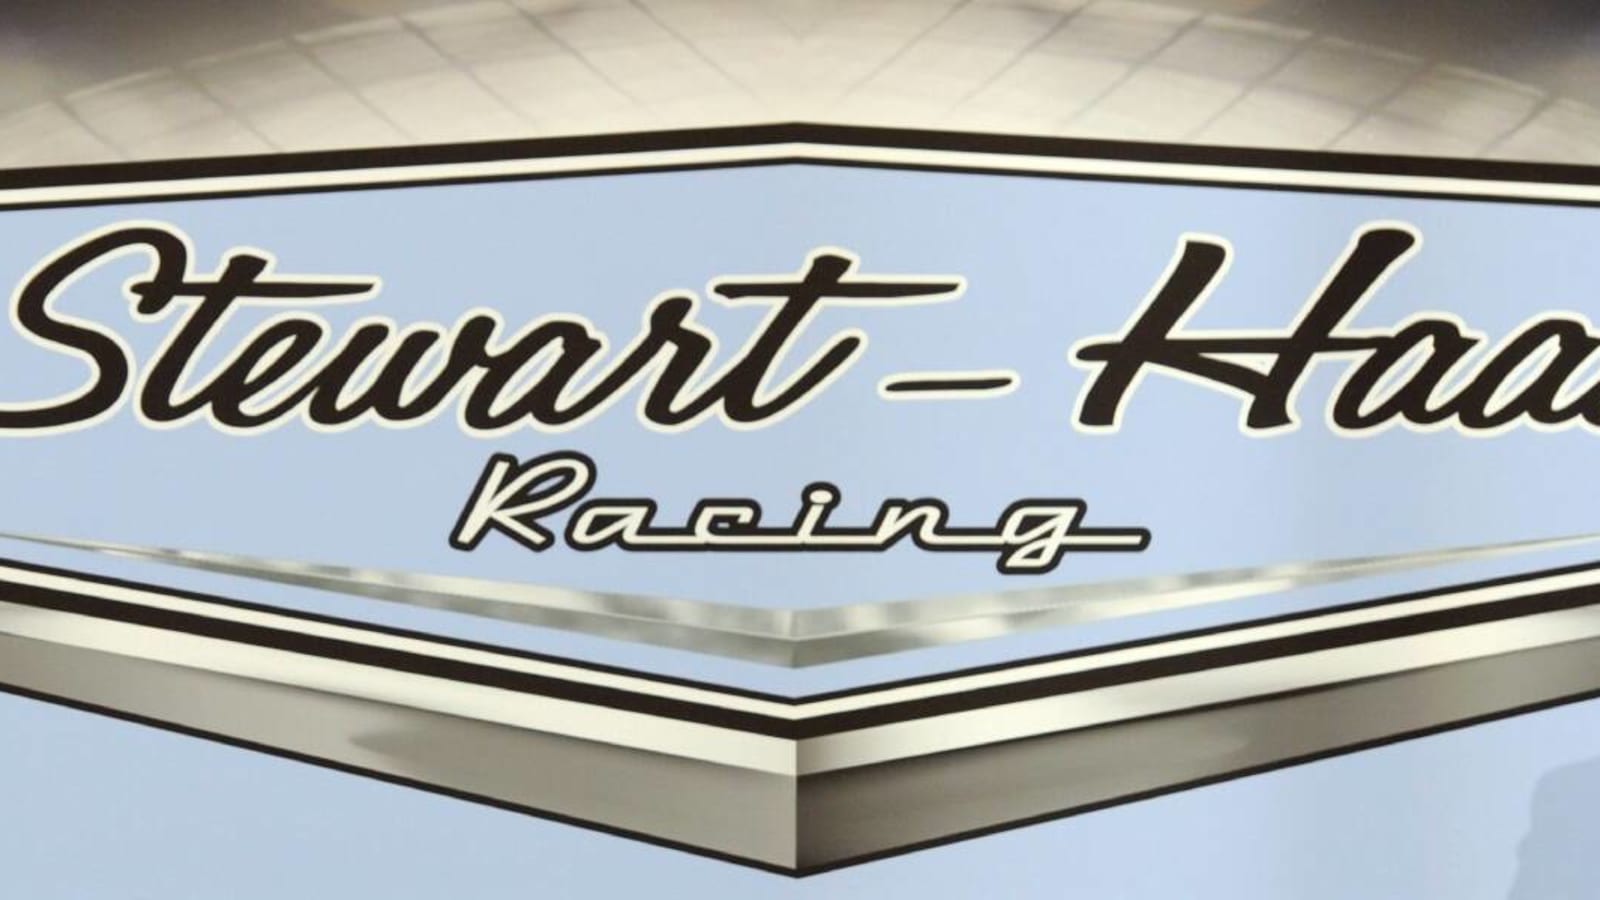 NASCAR puts illegal roof air deflectors from Stewart-Haas Racing on display ahead of Las Vegas